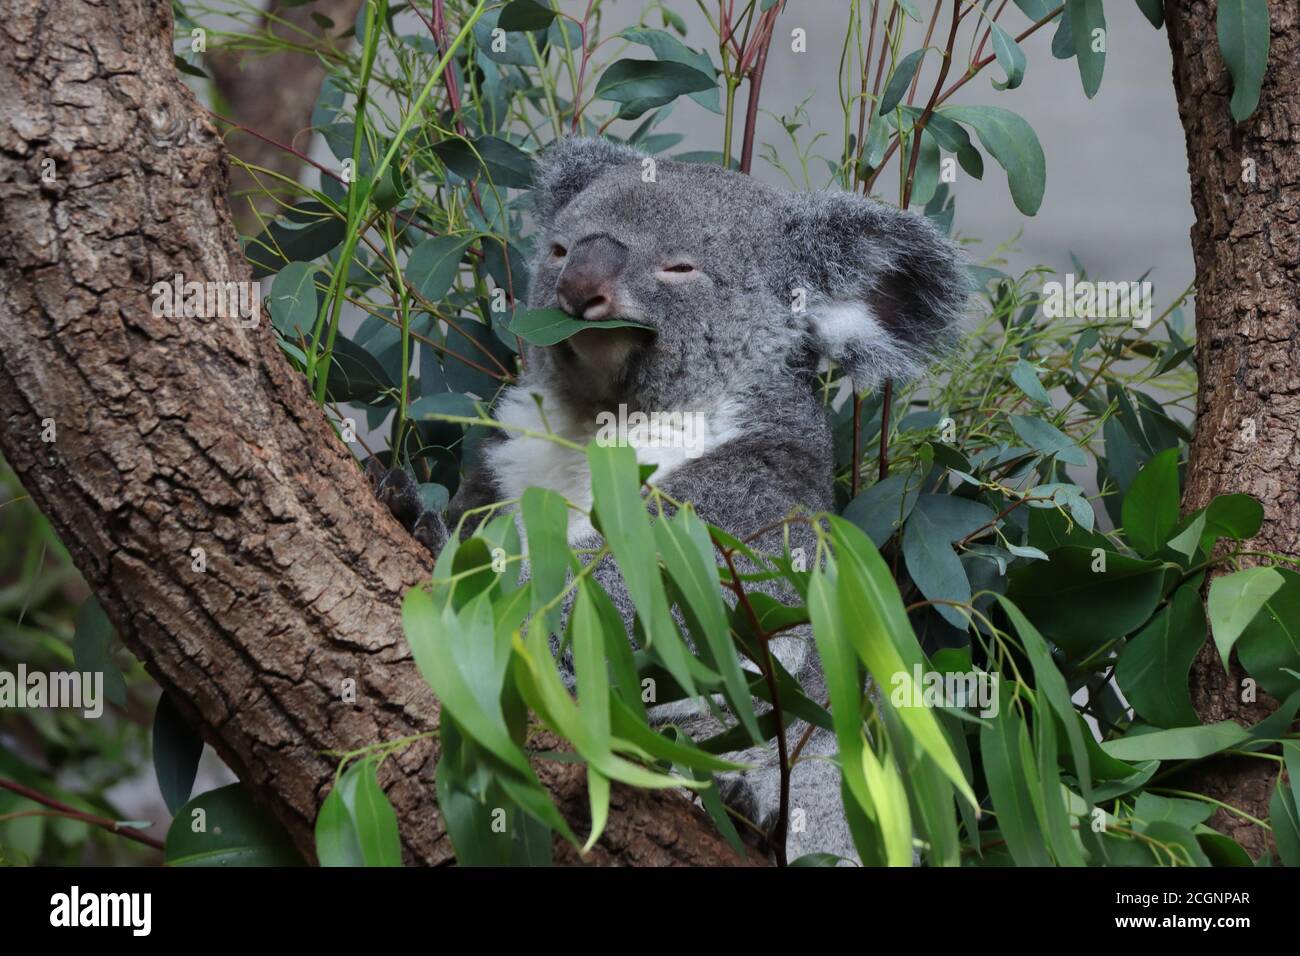 Oso Koala sentado en un árbol comiendo hojas de eucalipto Foto de stock